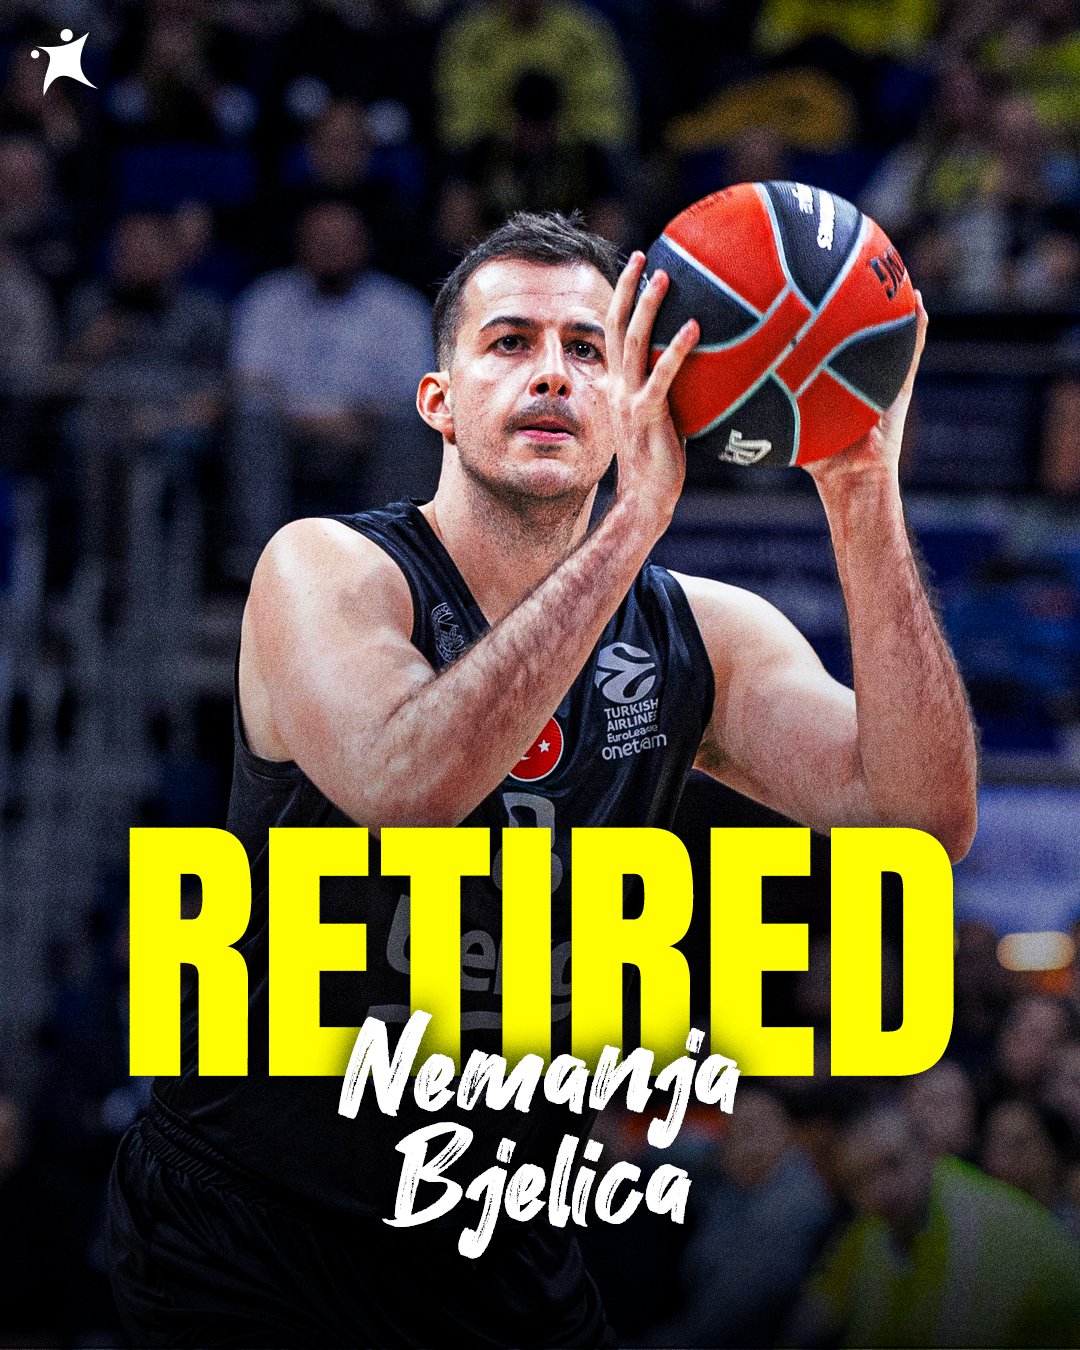 35岁的别利察自宣退役结束20年职业篮球生涯